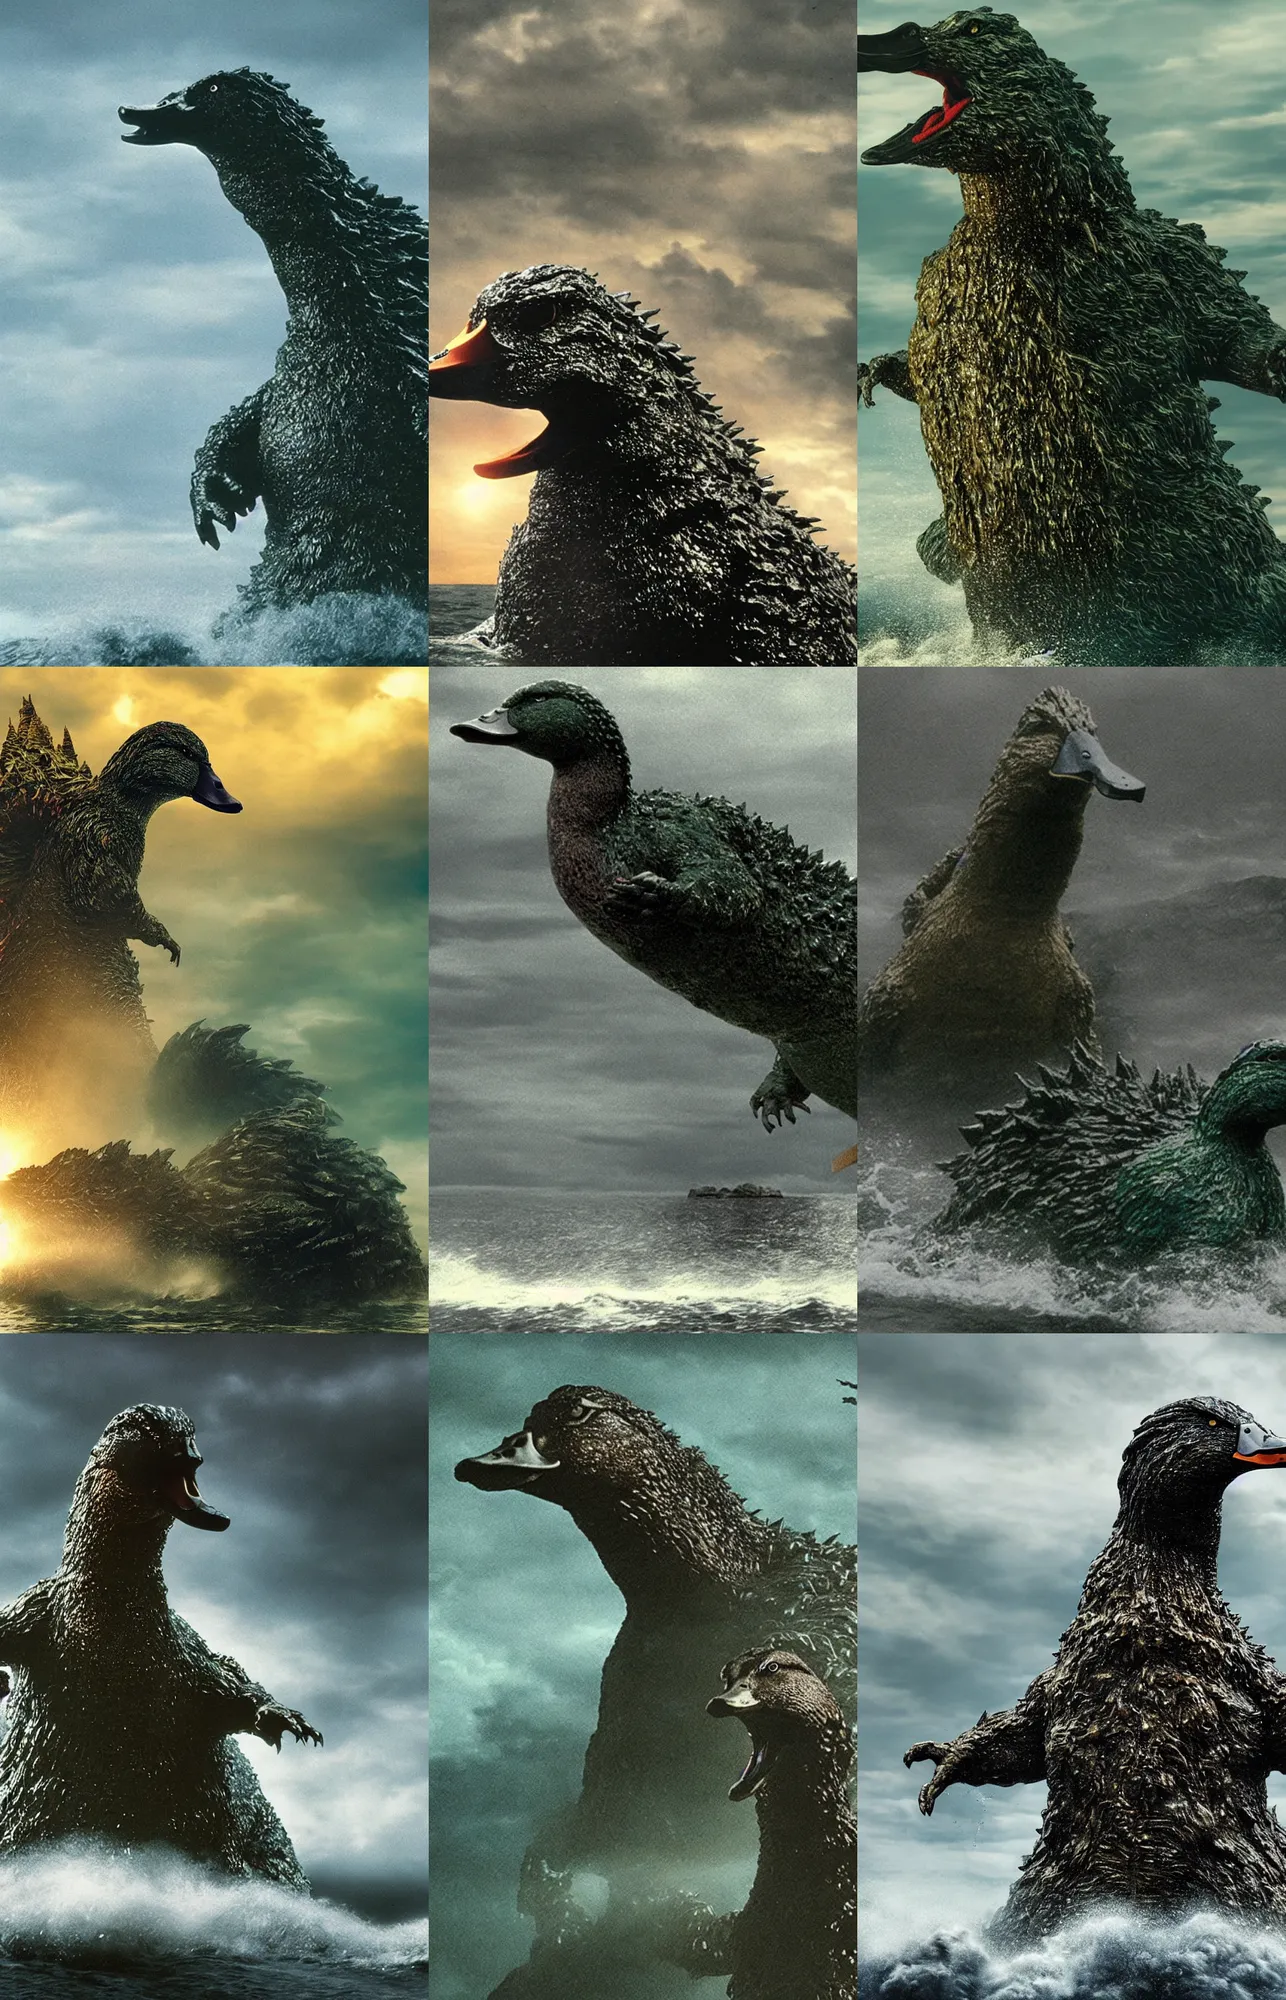 Prompt: mallard duck as godzilla monster rising from the ocean, dark and ominous film still